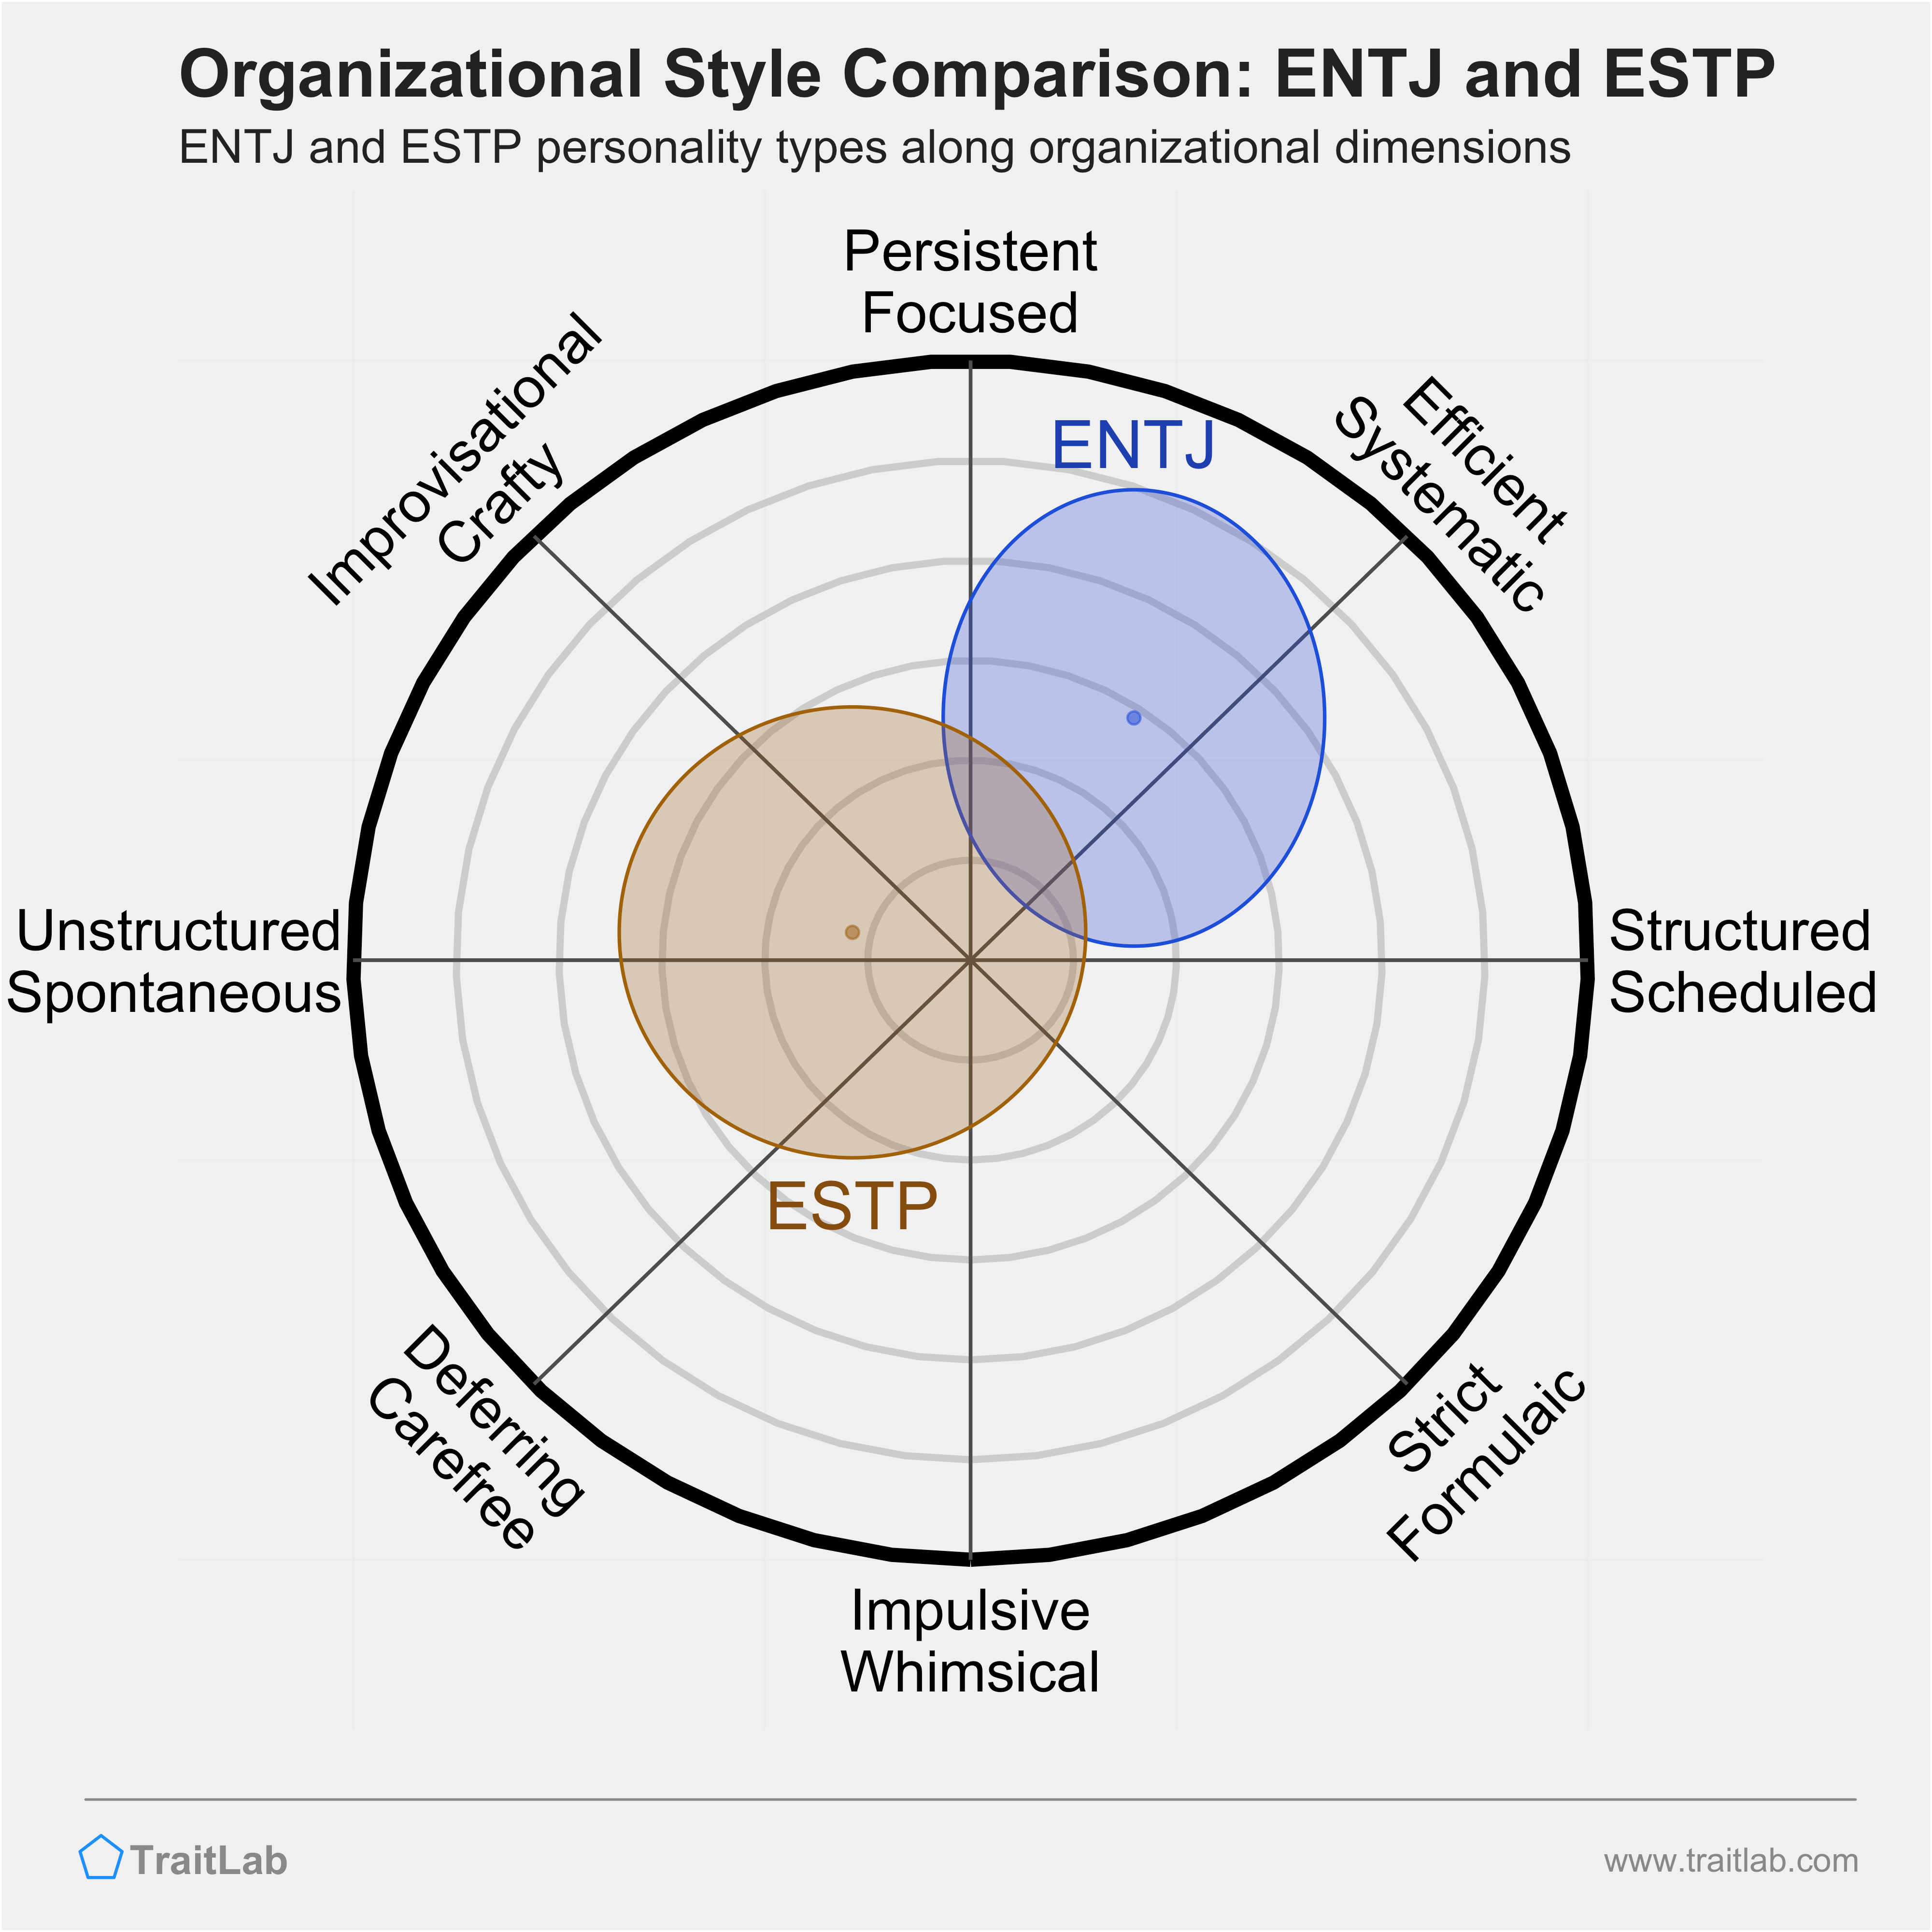 ENTJ and ESTP comparison across organizational dimensions